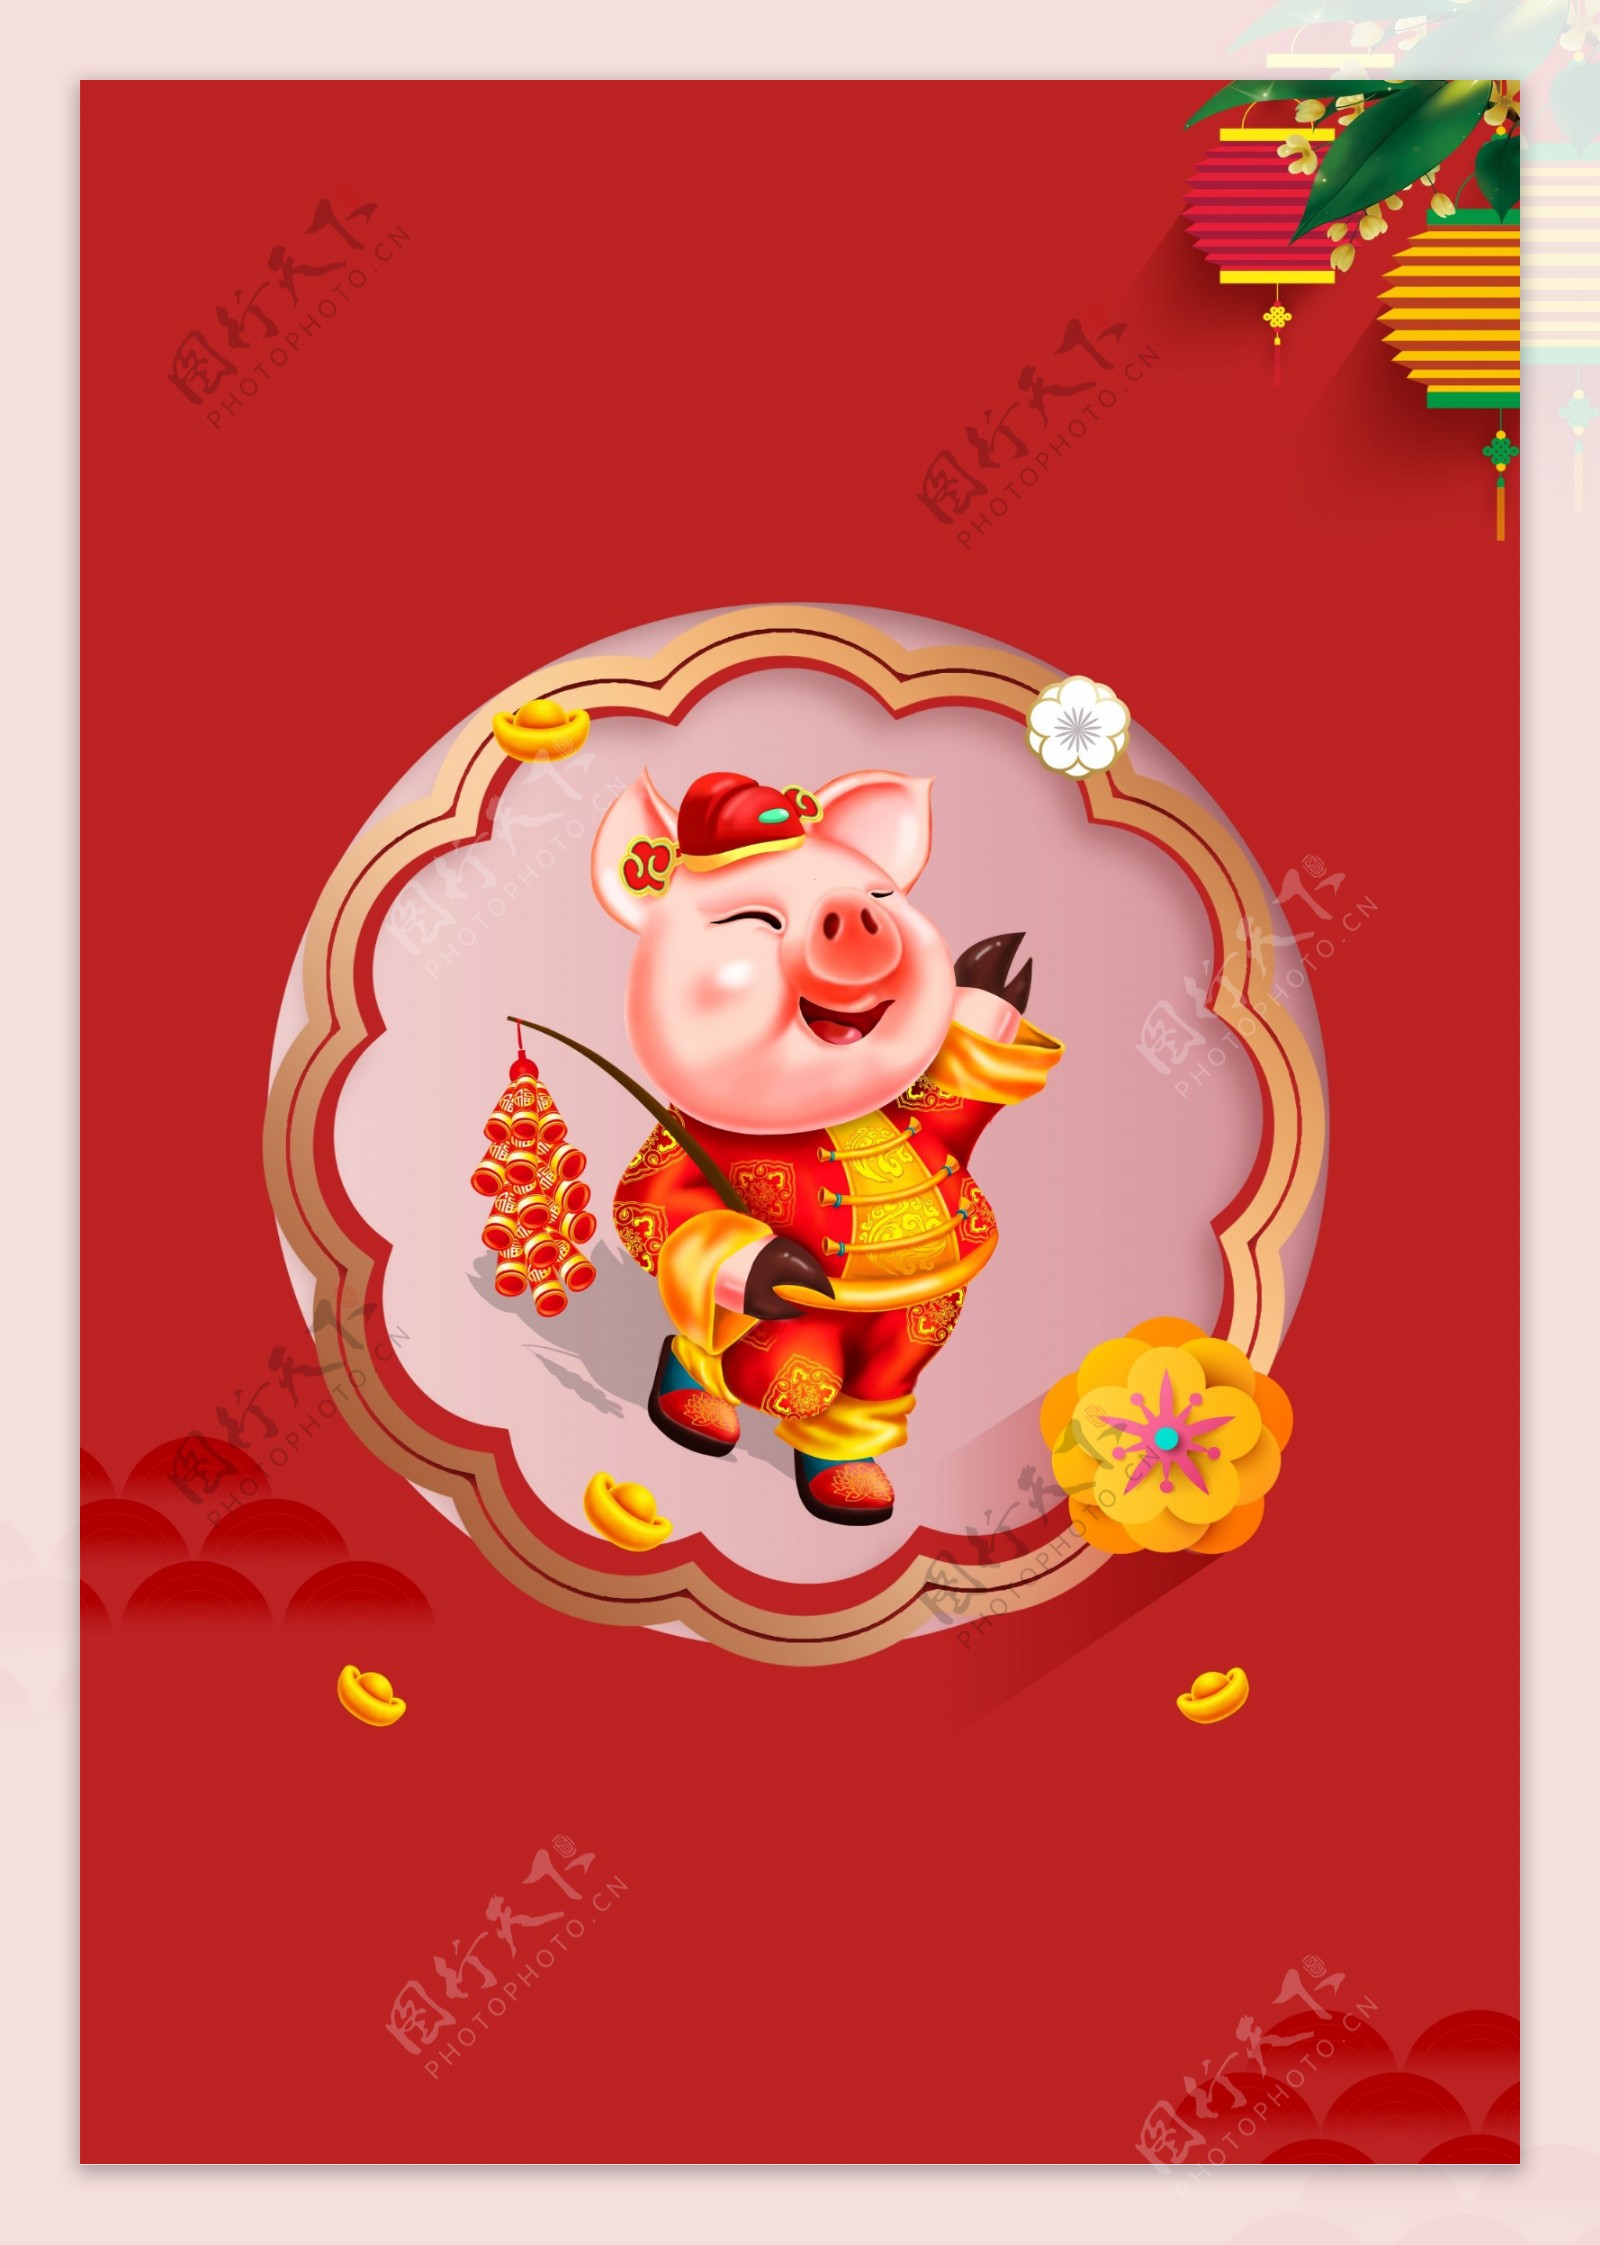 喜气猪年春节背景素材